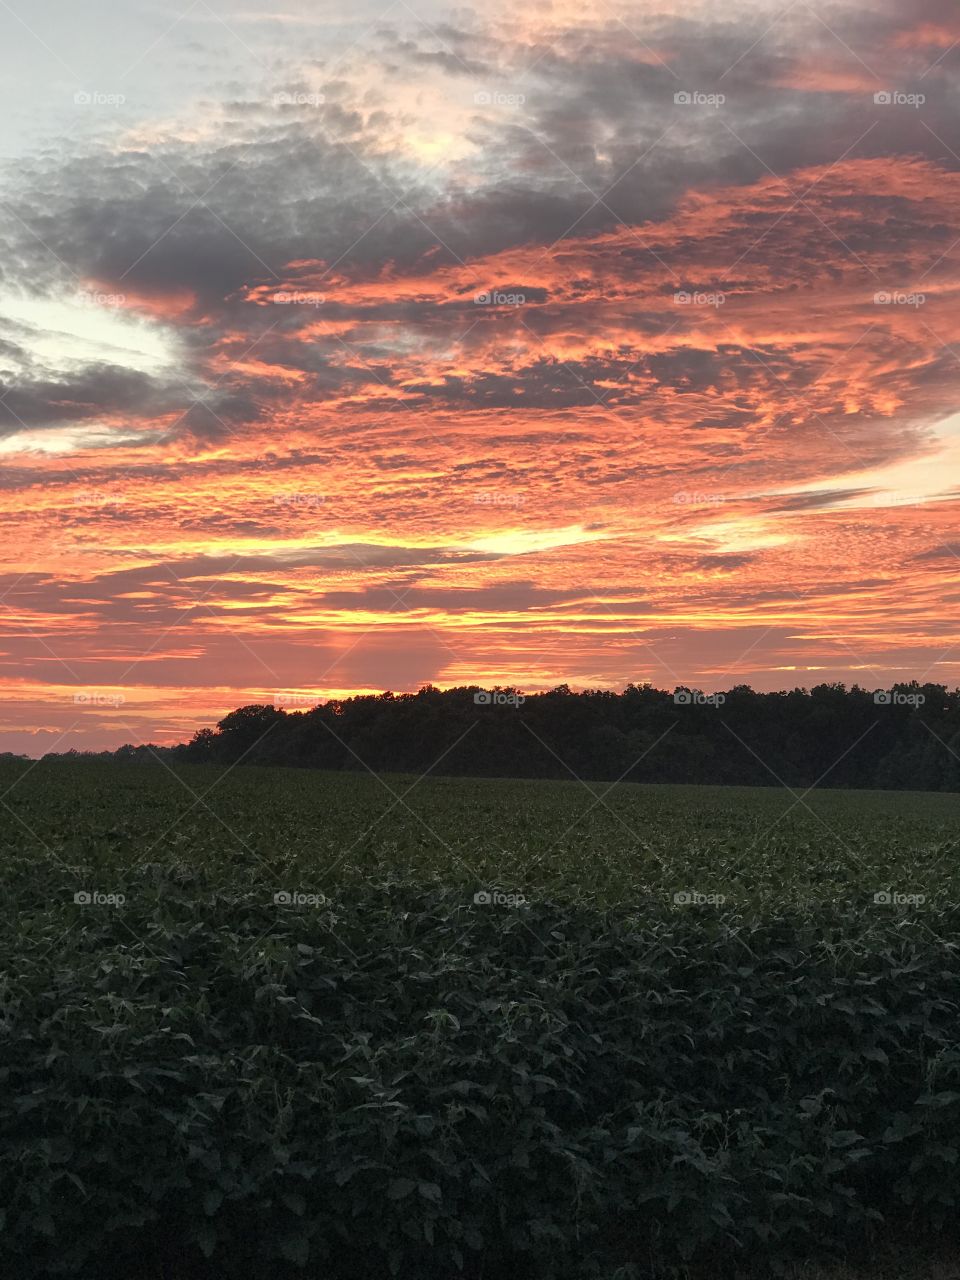 Sunset, fields